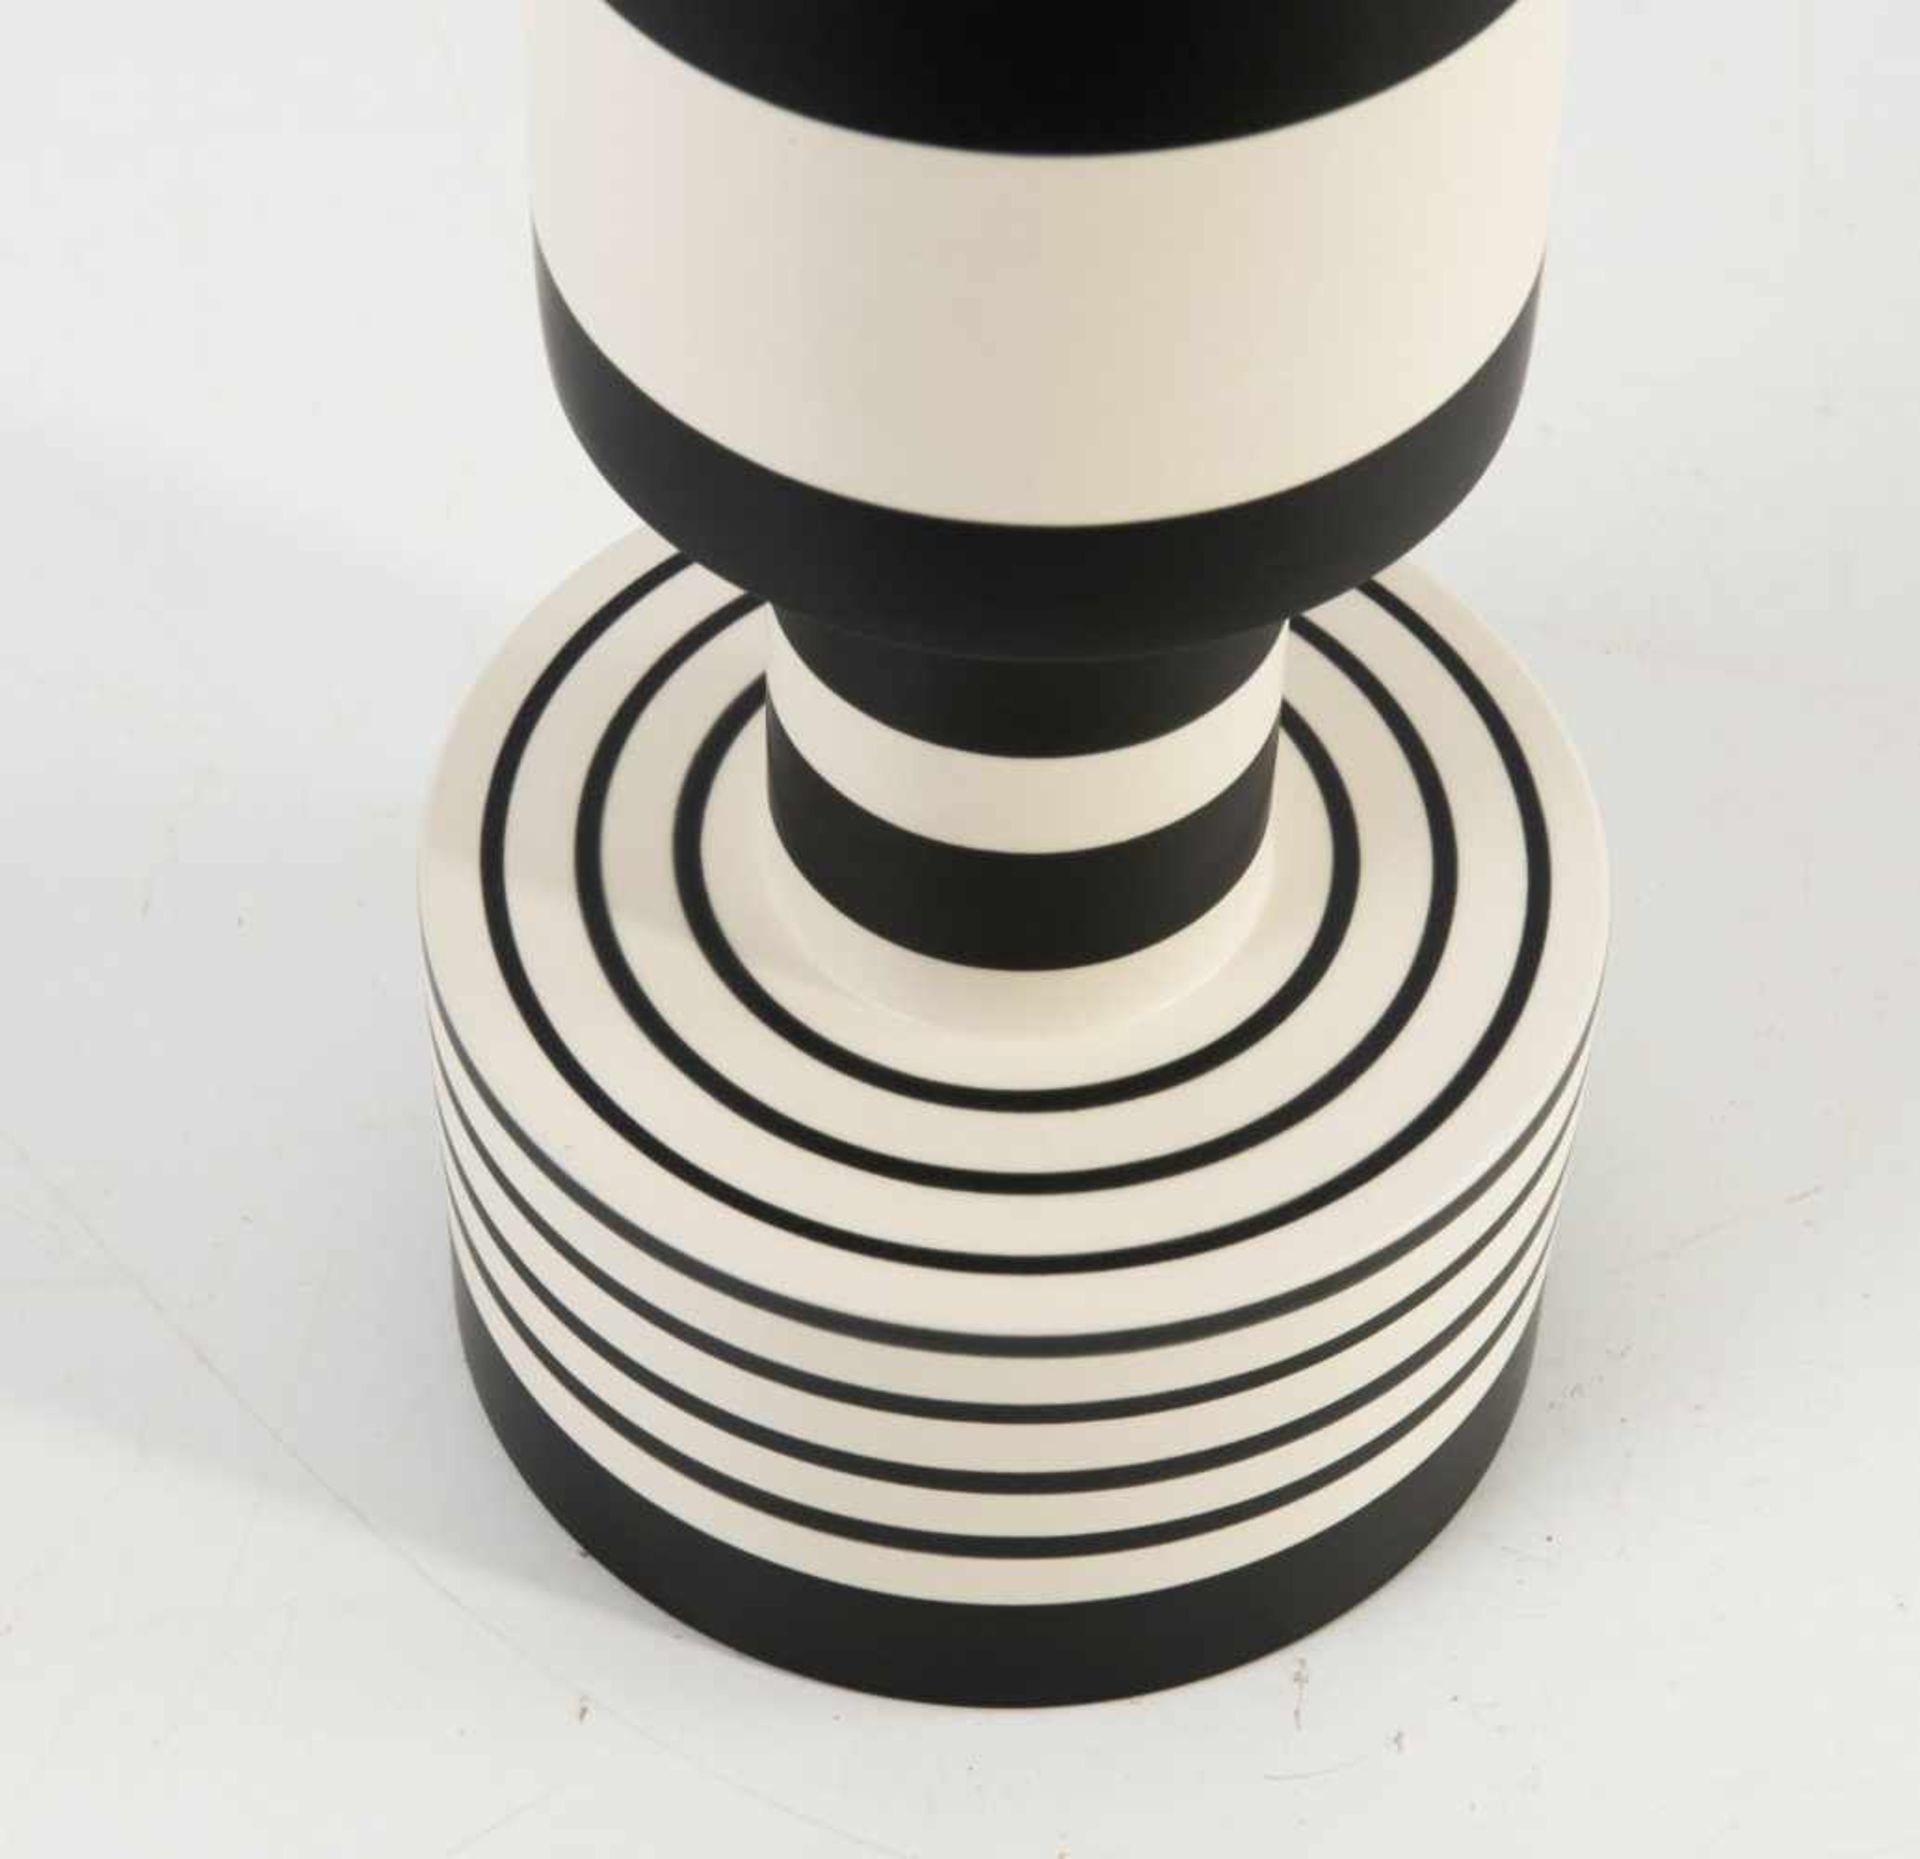 Vase 'Vaso Calice', um 1986 Ettore Sottsass H. 47,1 cm. Bitossi, Montelupo. Steingut, cremeweiß - Bild 4 aus 5